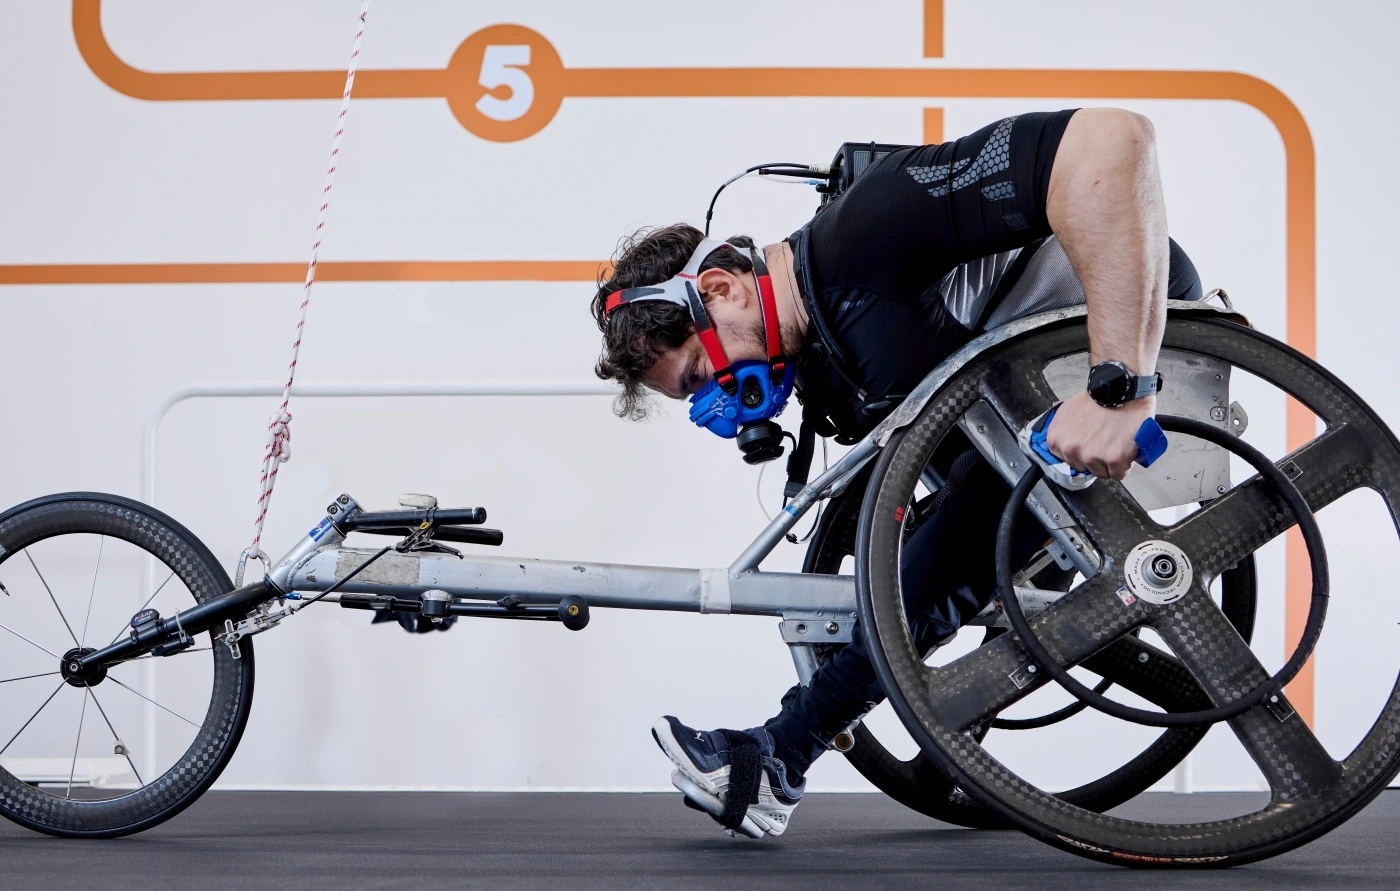 Testy - wózek inwalidzki na wielofunkcyjnej bieżni